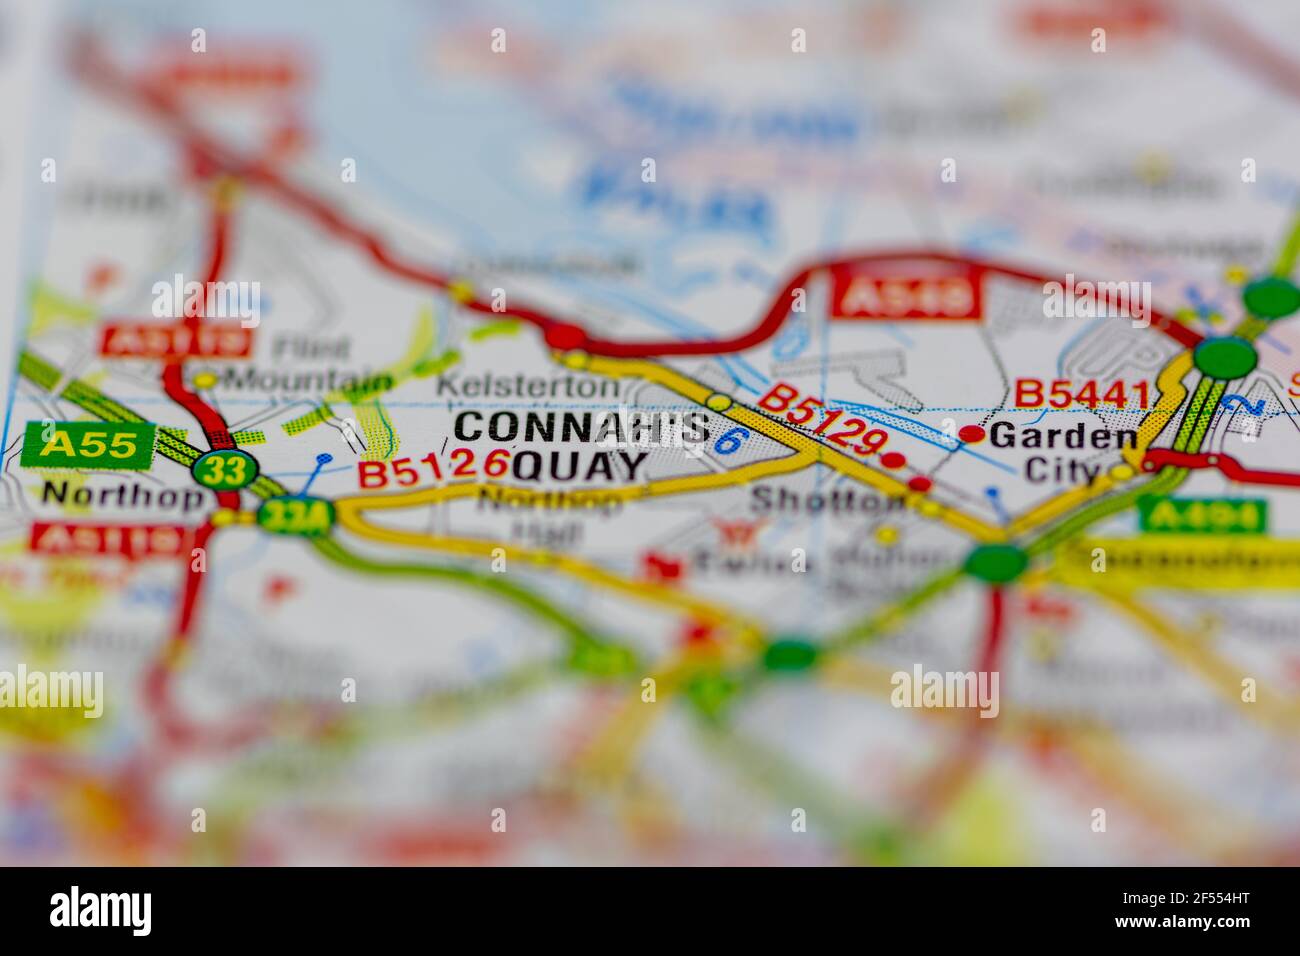 Connah's Quay sur une carte de géographie ou une carte routière Banque D'Images